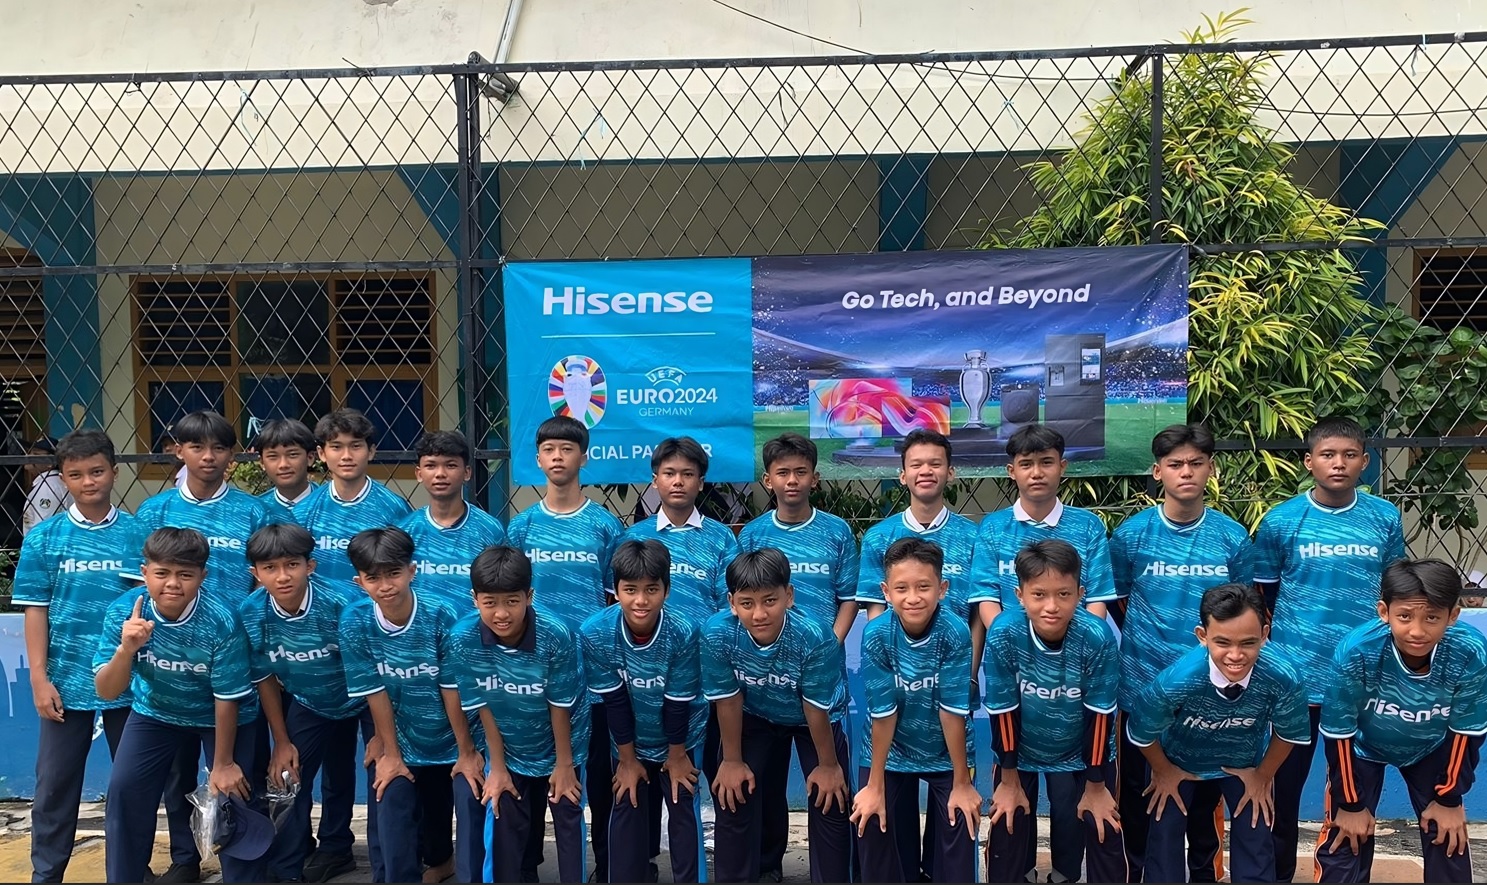 Bukan Hanya Dukung Sepakbola Dunia, Hisense Juga Meluncurkan Program 'Football for Schools' di Indonesia